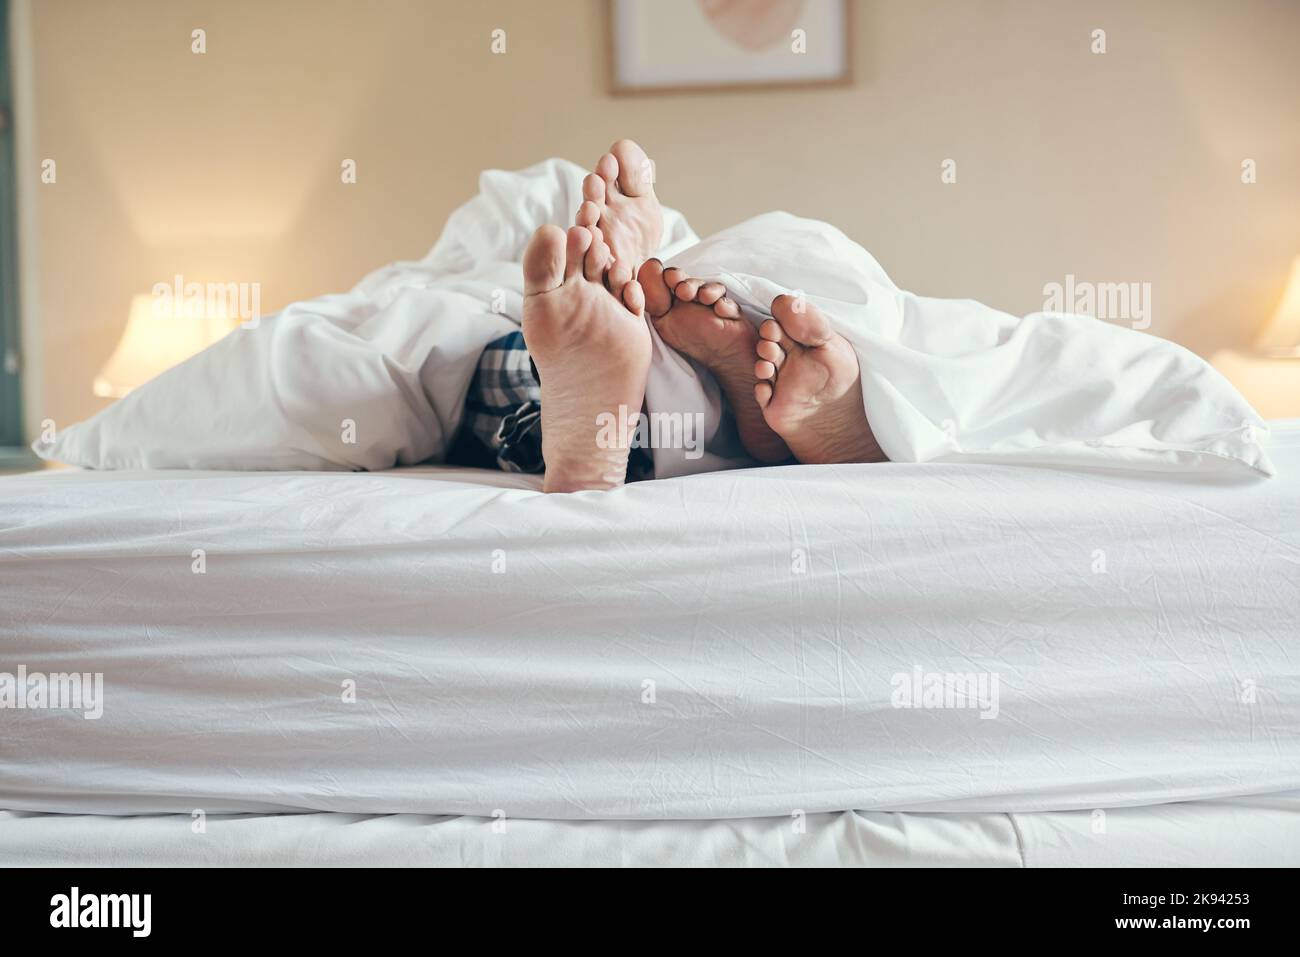 Per il resto della giornata, non è possibile dormire a letto. Una coppia irriconoscibile si stoppa sotto le lenzuola mentre si sdraiava a letto insieme a casa. Foto Stock